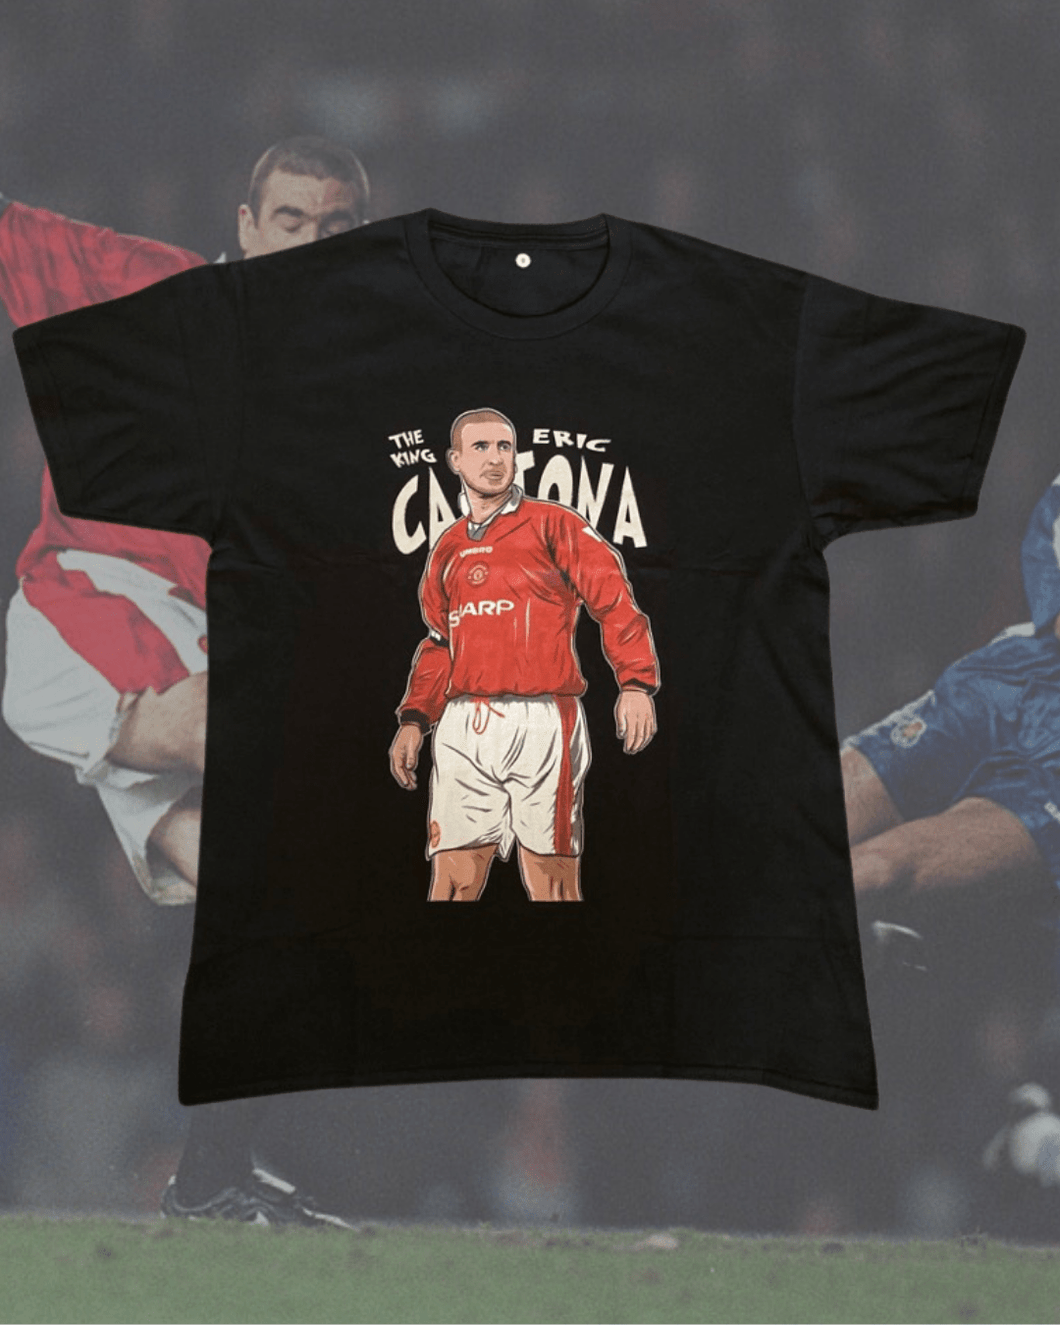 Eric Cantona tee - Mystery Football Shirts 4U